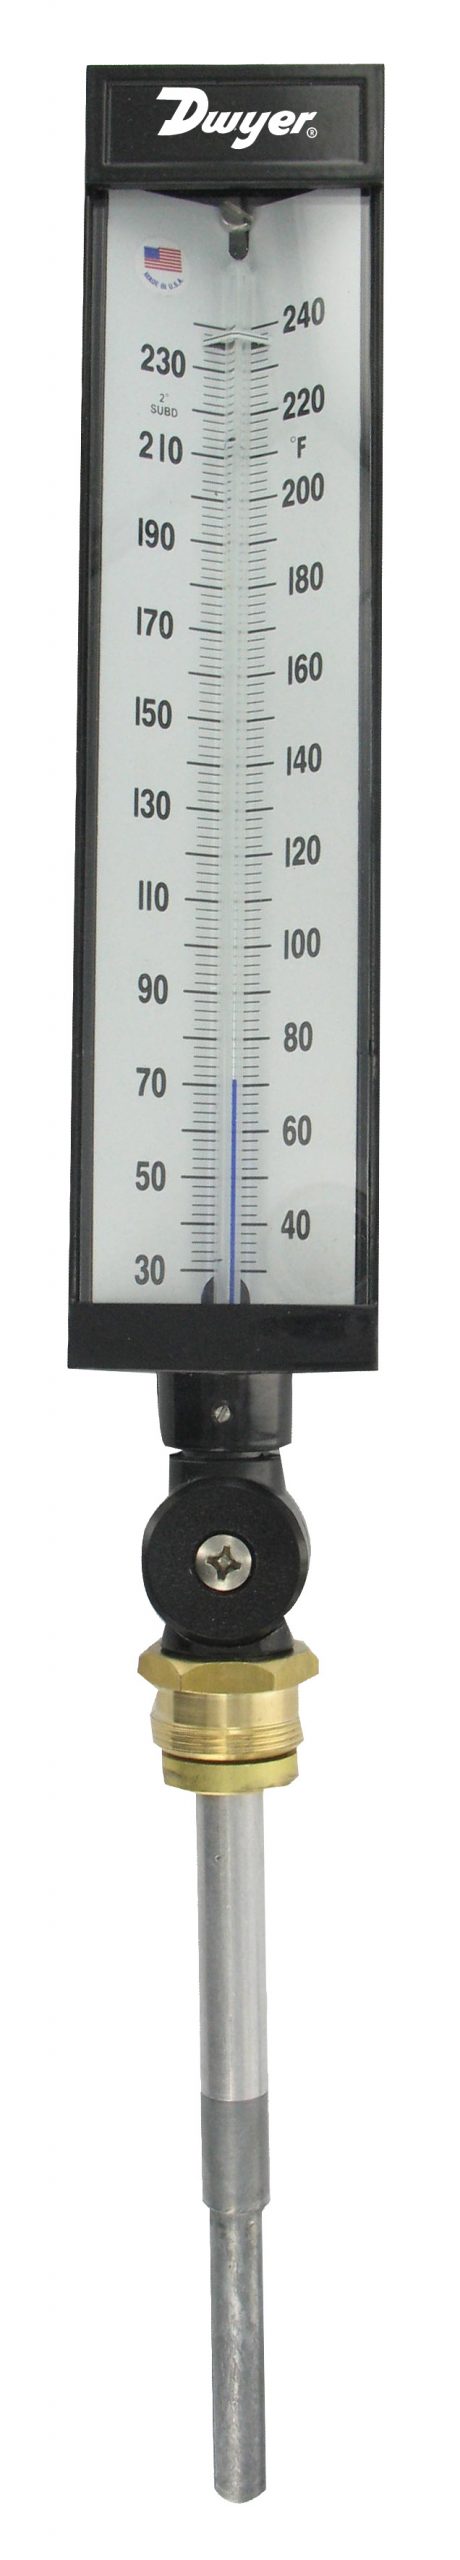 Цифровой дистанционный термометр Primo по цене руб в Санкт Петербурге с доставкой по РФ